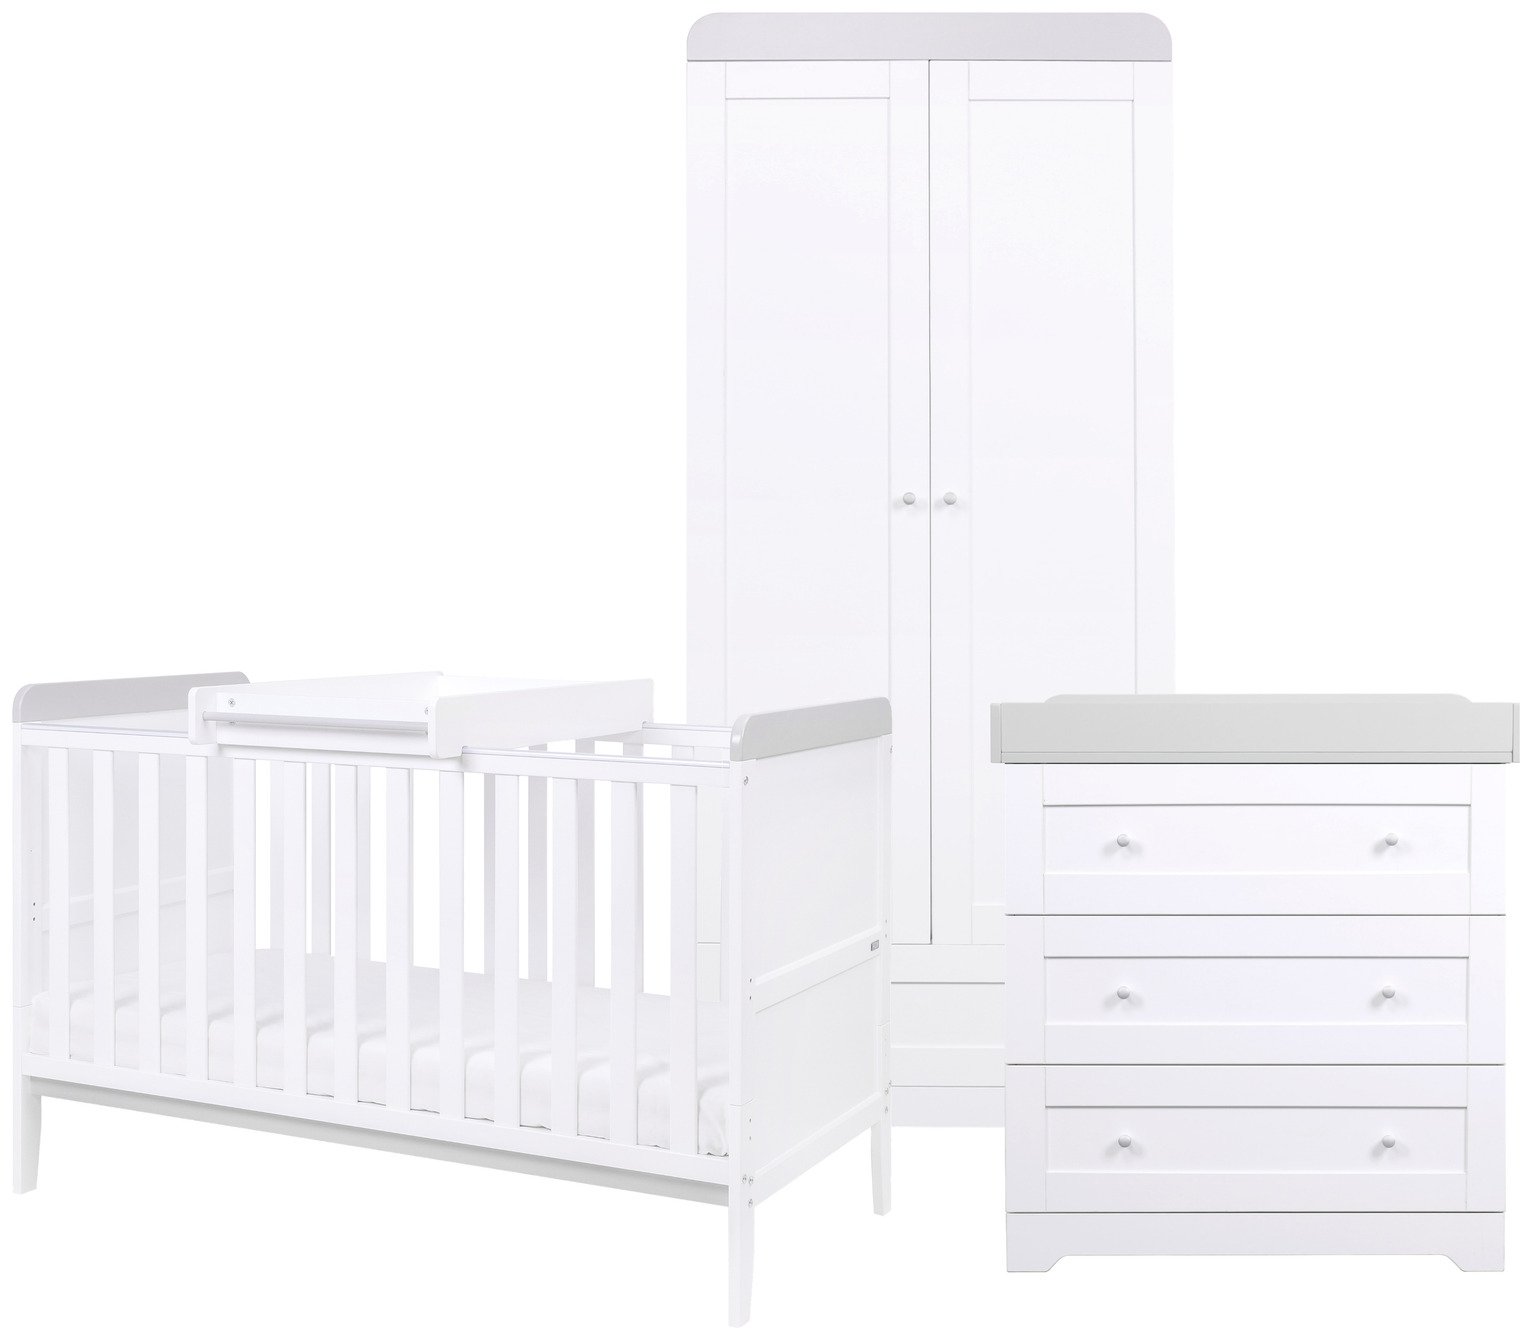 Tutti Bambini Rio 3 Piece Furniture Set - White & Grey